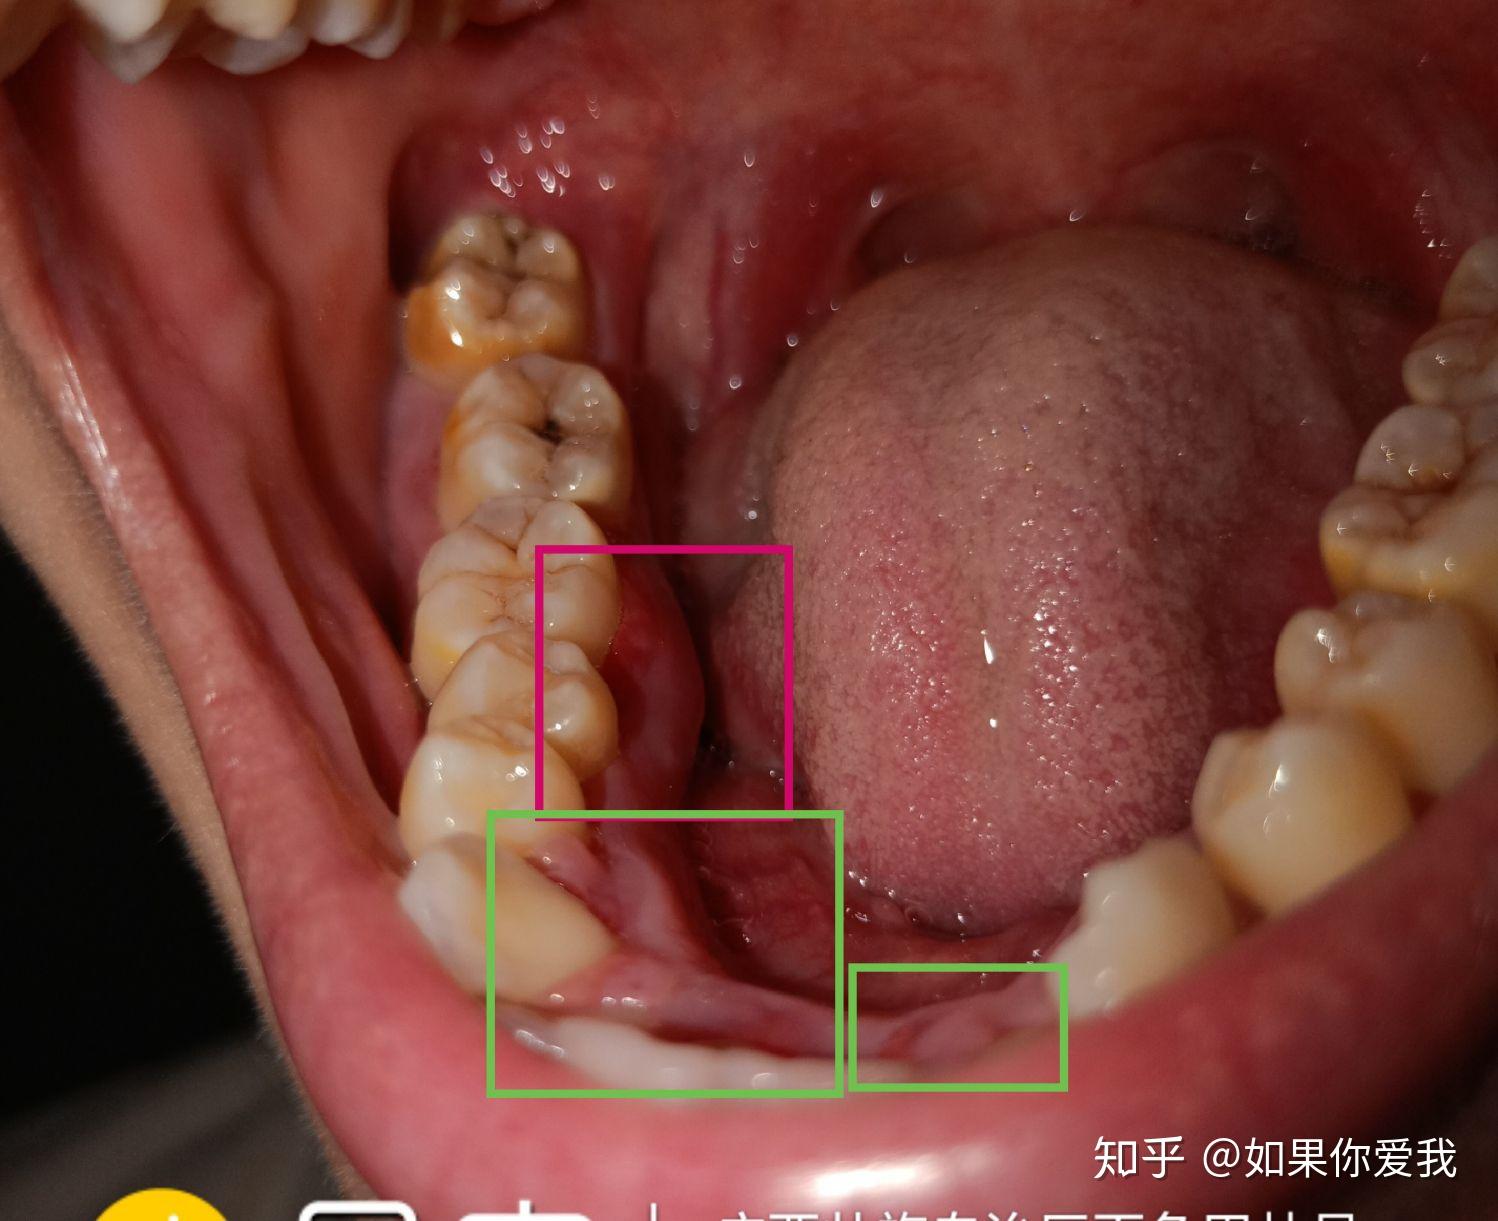 中弄破的牙龈形成的粘连和肿胀破损以上情况一直持续了差不多一个月